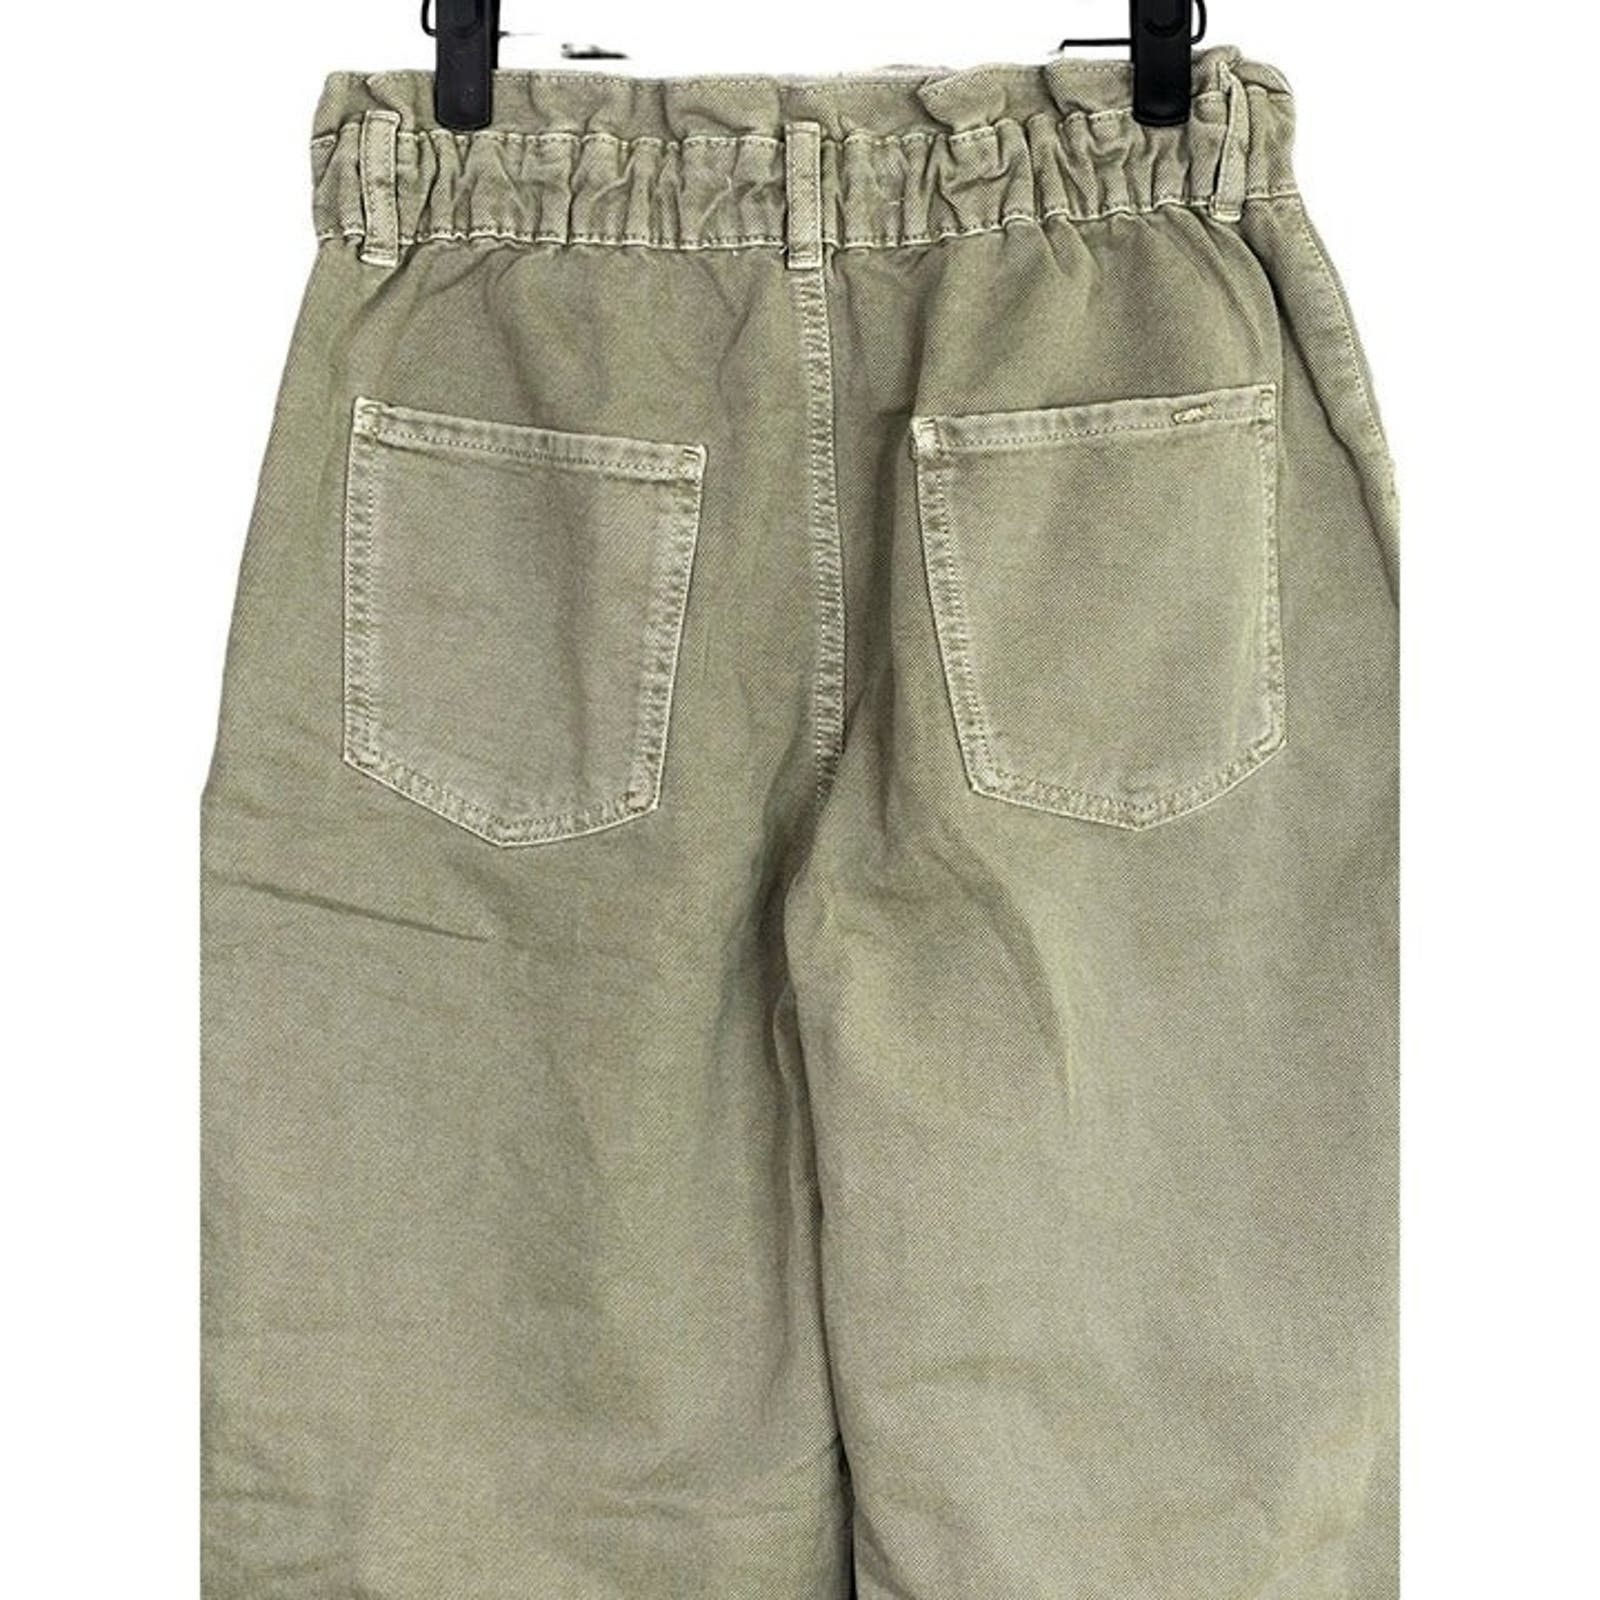 Zara Zara Paper Bag Relaxed Baggy Jeans Pants 29 Khaki Green Size 29" - 11 Thumbnail